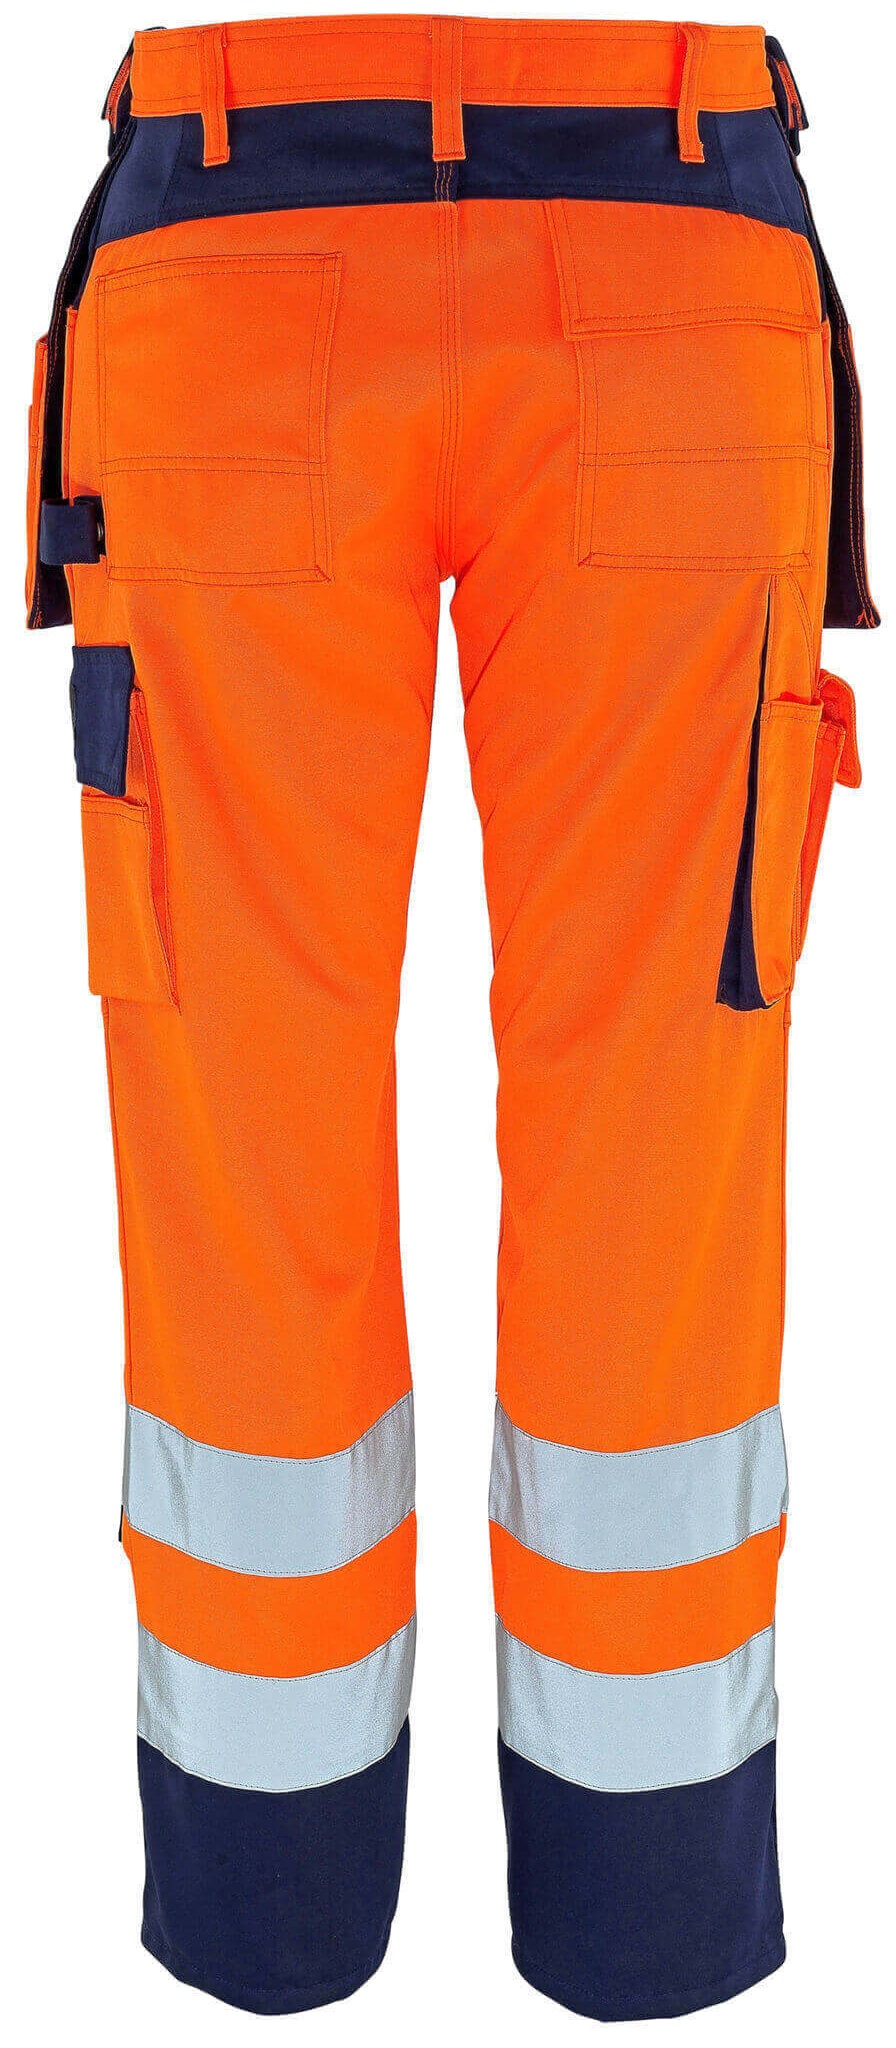 MASCOT-Warnschutz, Warn-Bund-Hose, Almas, 82 cm, 310 g/m², orange/marine
